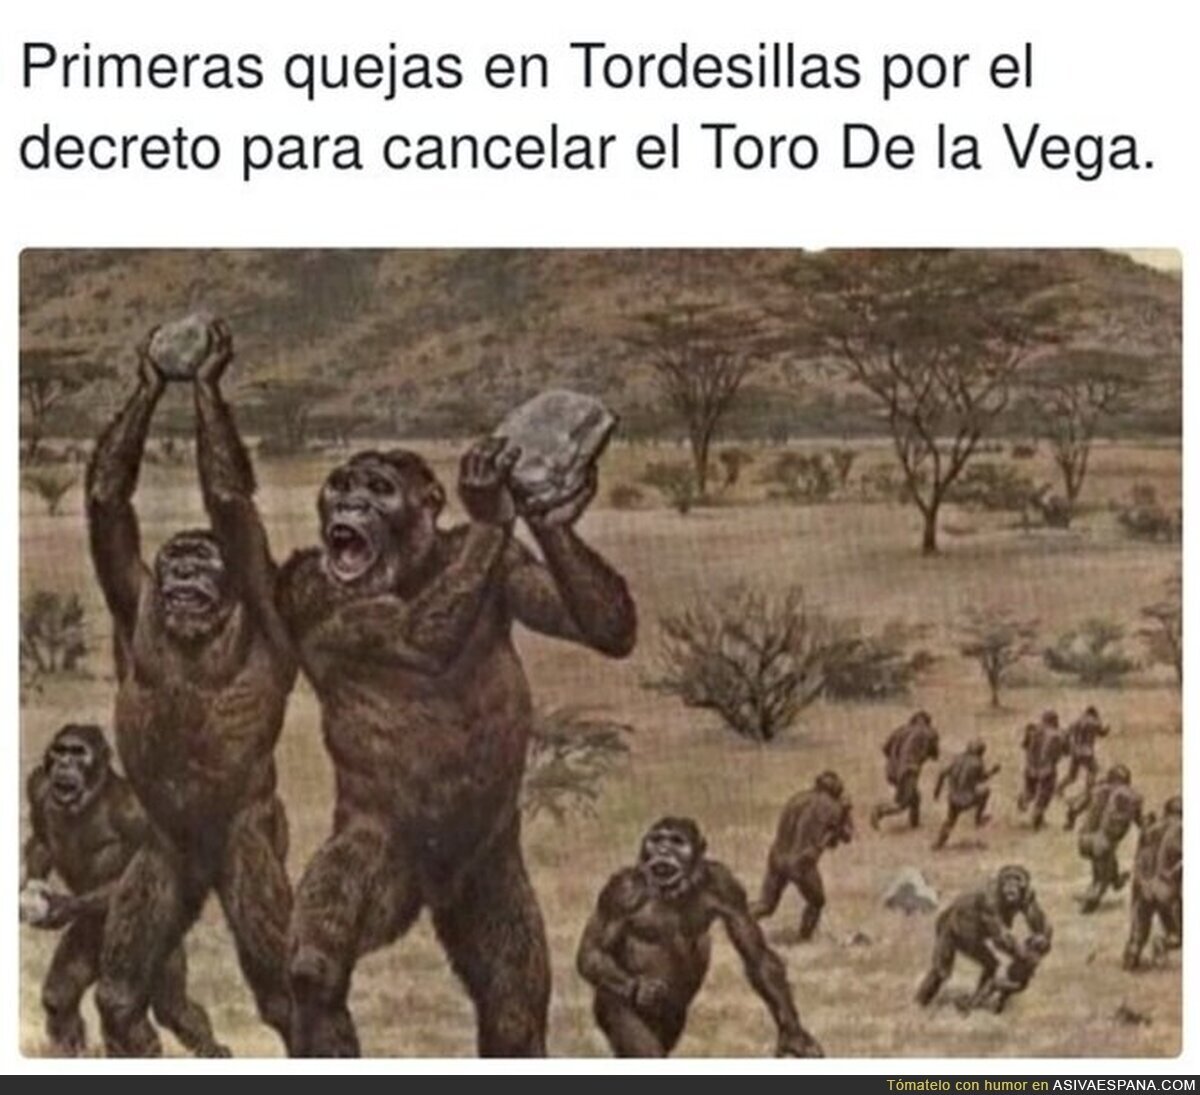 Comparar a los que apoyan el #torodelavega con los de la foto me parece un insulto a nuestros antepasados homínidos, por @TirodeGraciah